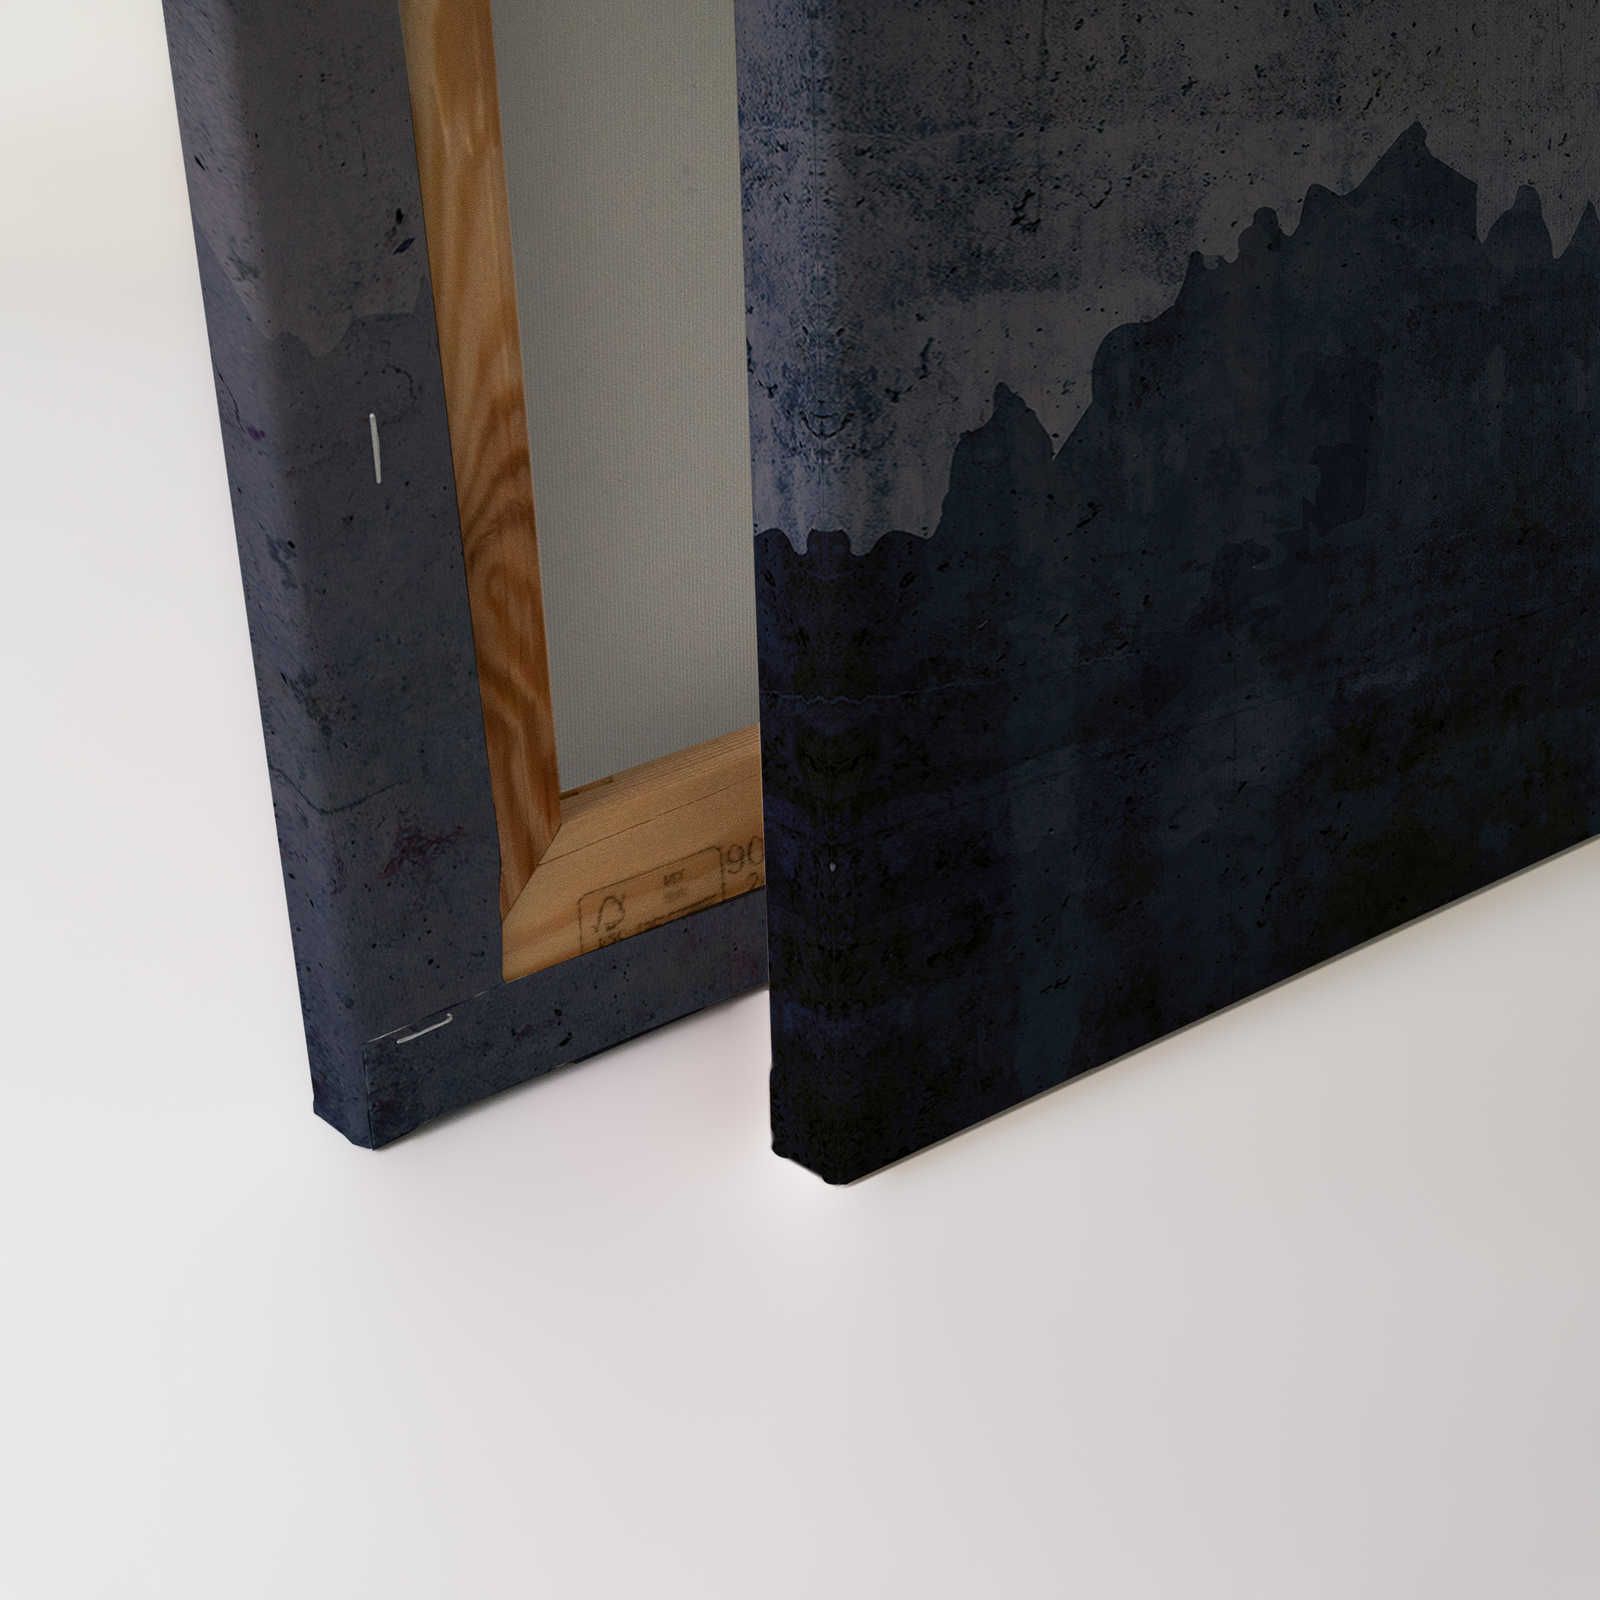             Tableau toile Anthracite aspect béton & argenté design lignes - 0,90 m x 0,60 m
        